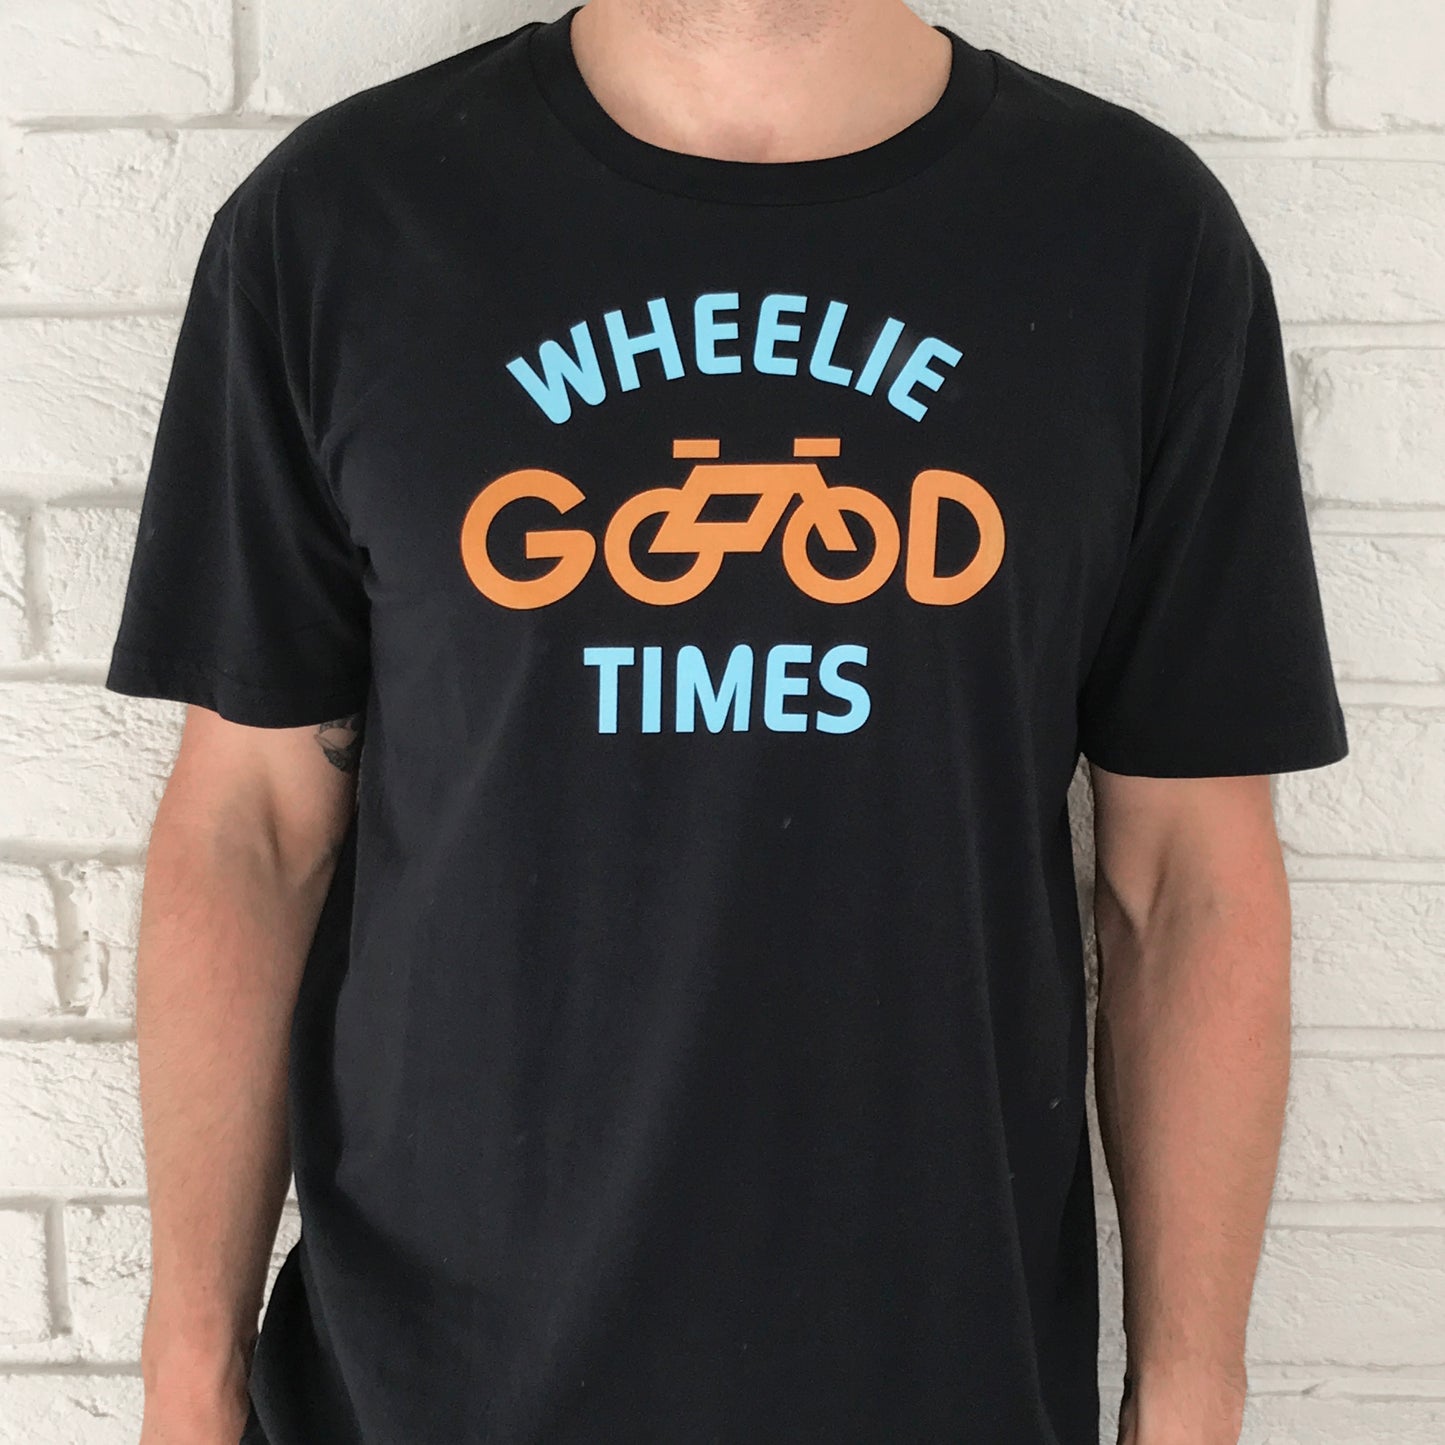 I LIKE YOUR BIKE - Wheelie Good Times T-Shirt